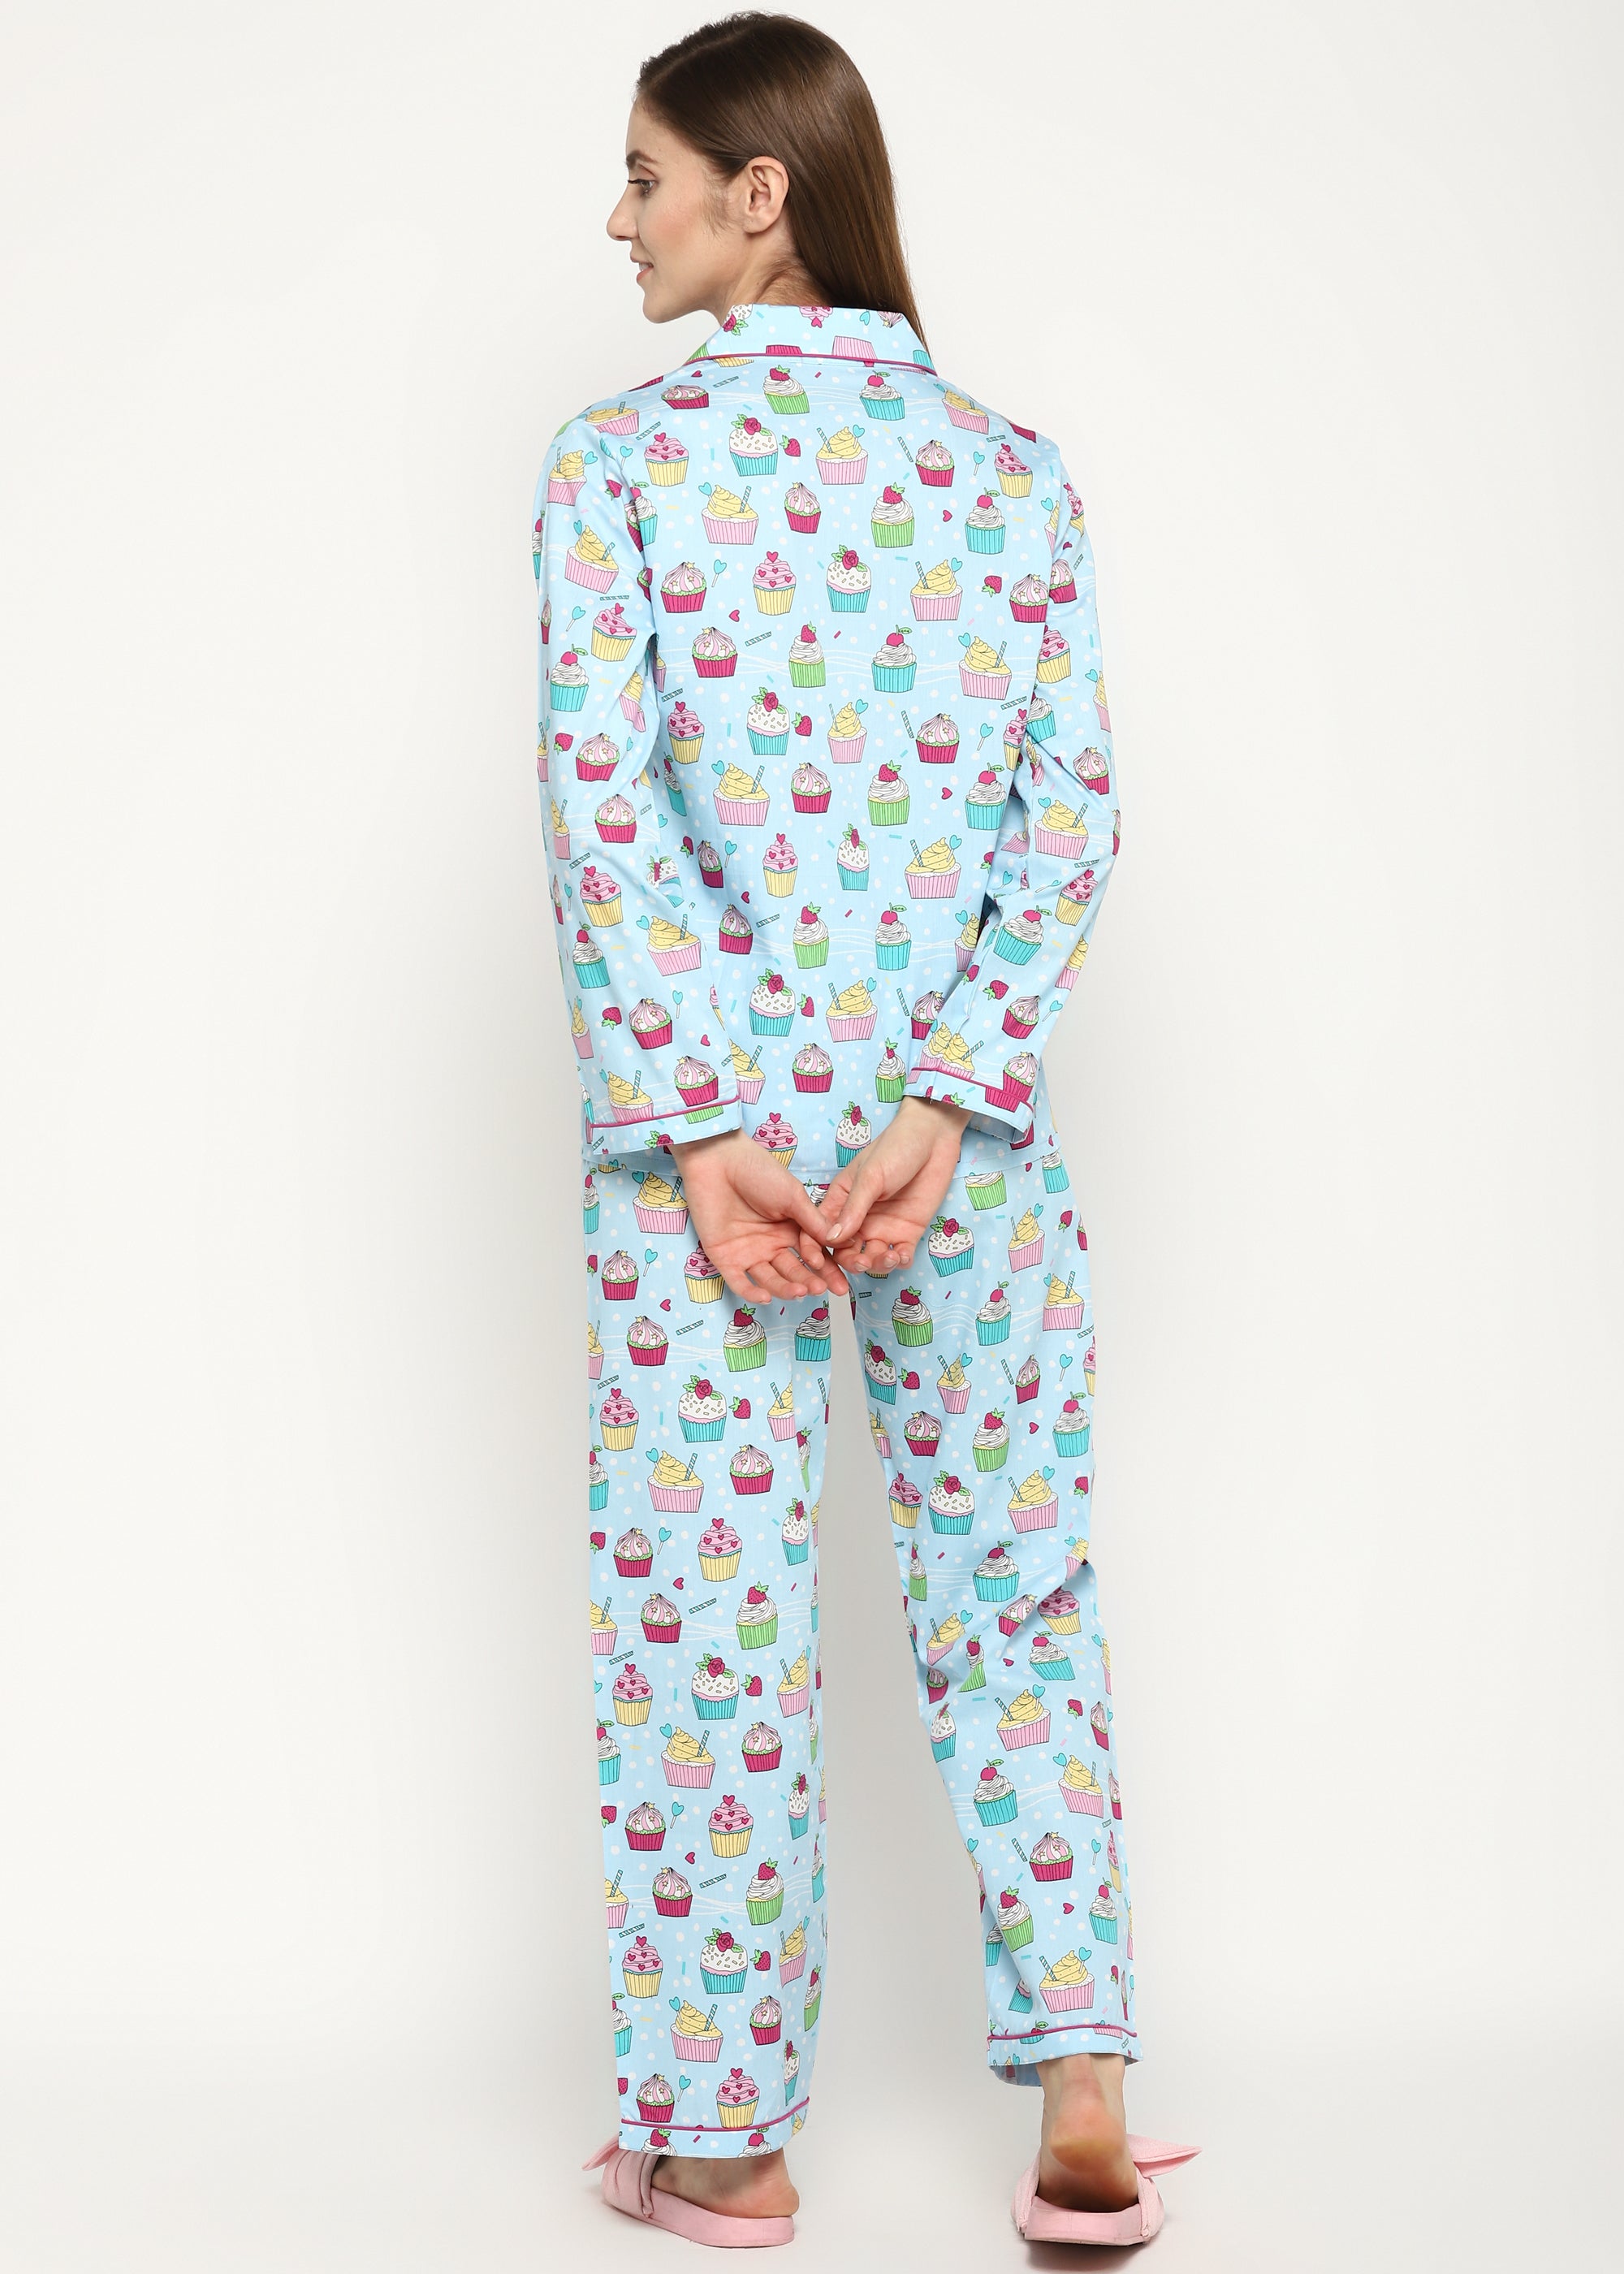 Cupcake Sprinkles Print Long Sleeve Women's Night Suit - Shopbloom